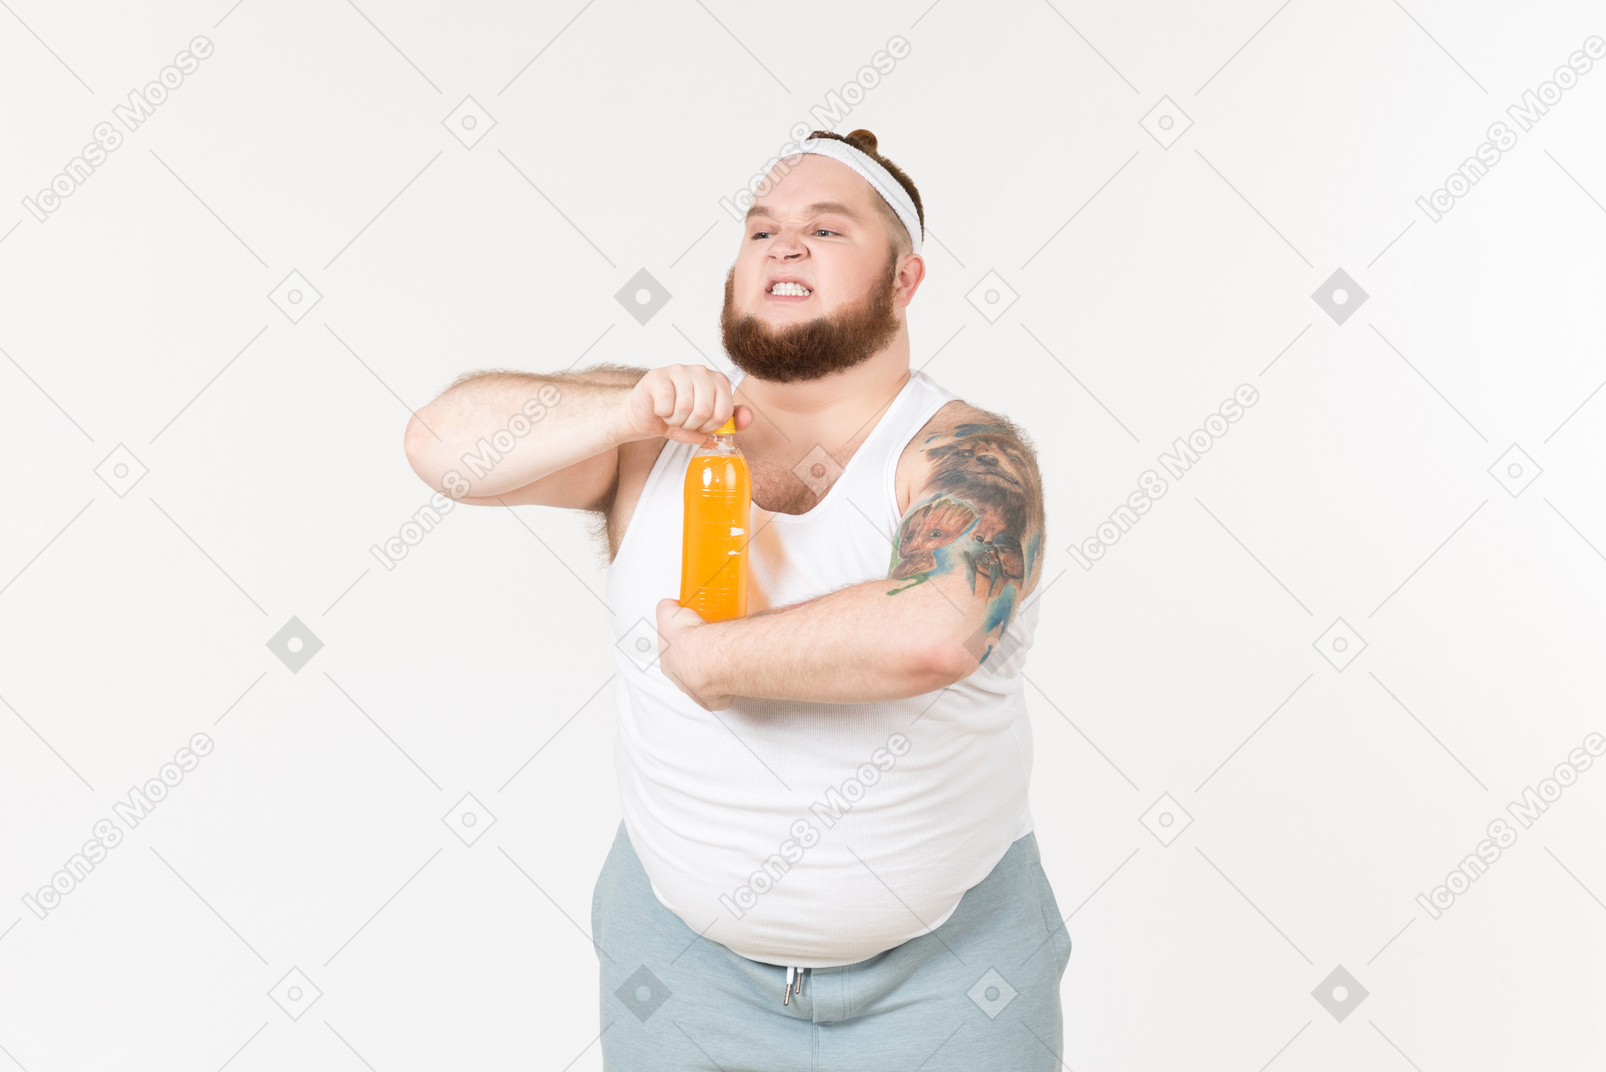 A fat sportsman opening a bottle of orange drink